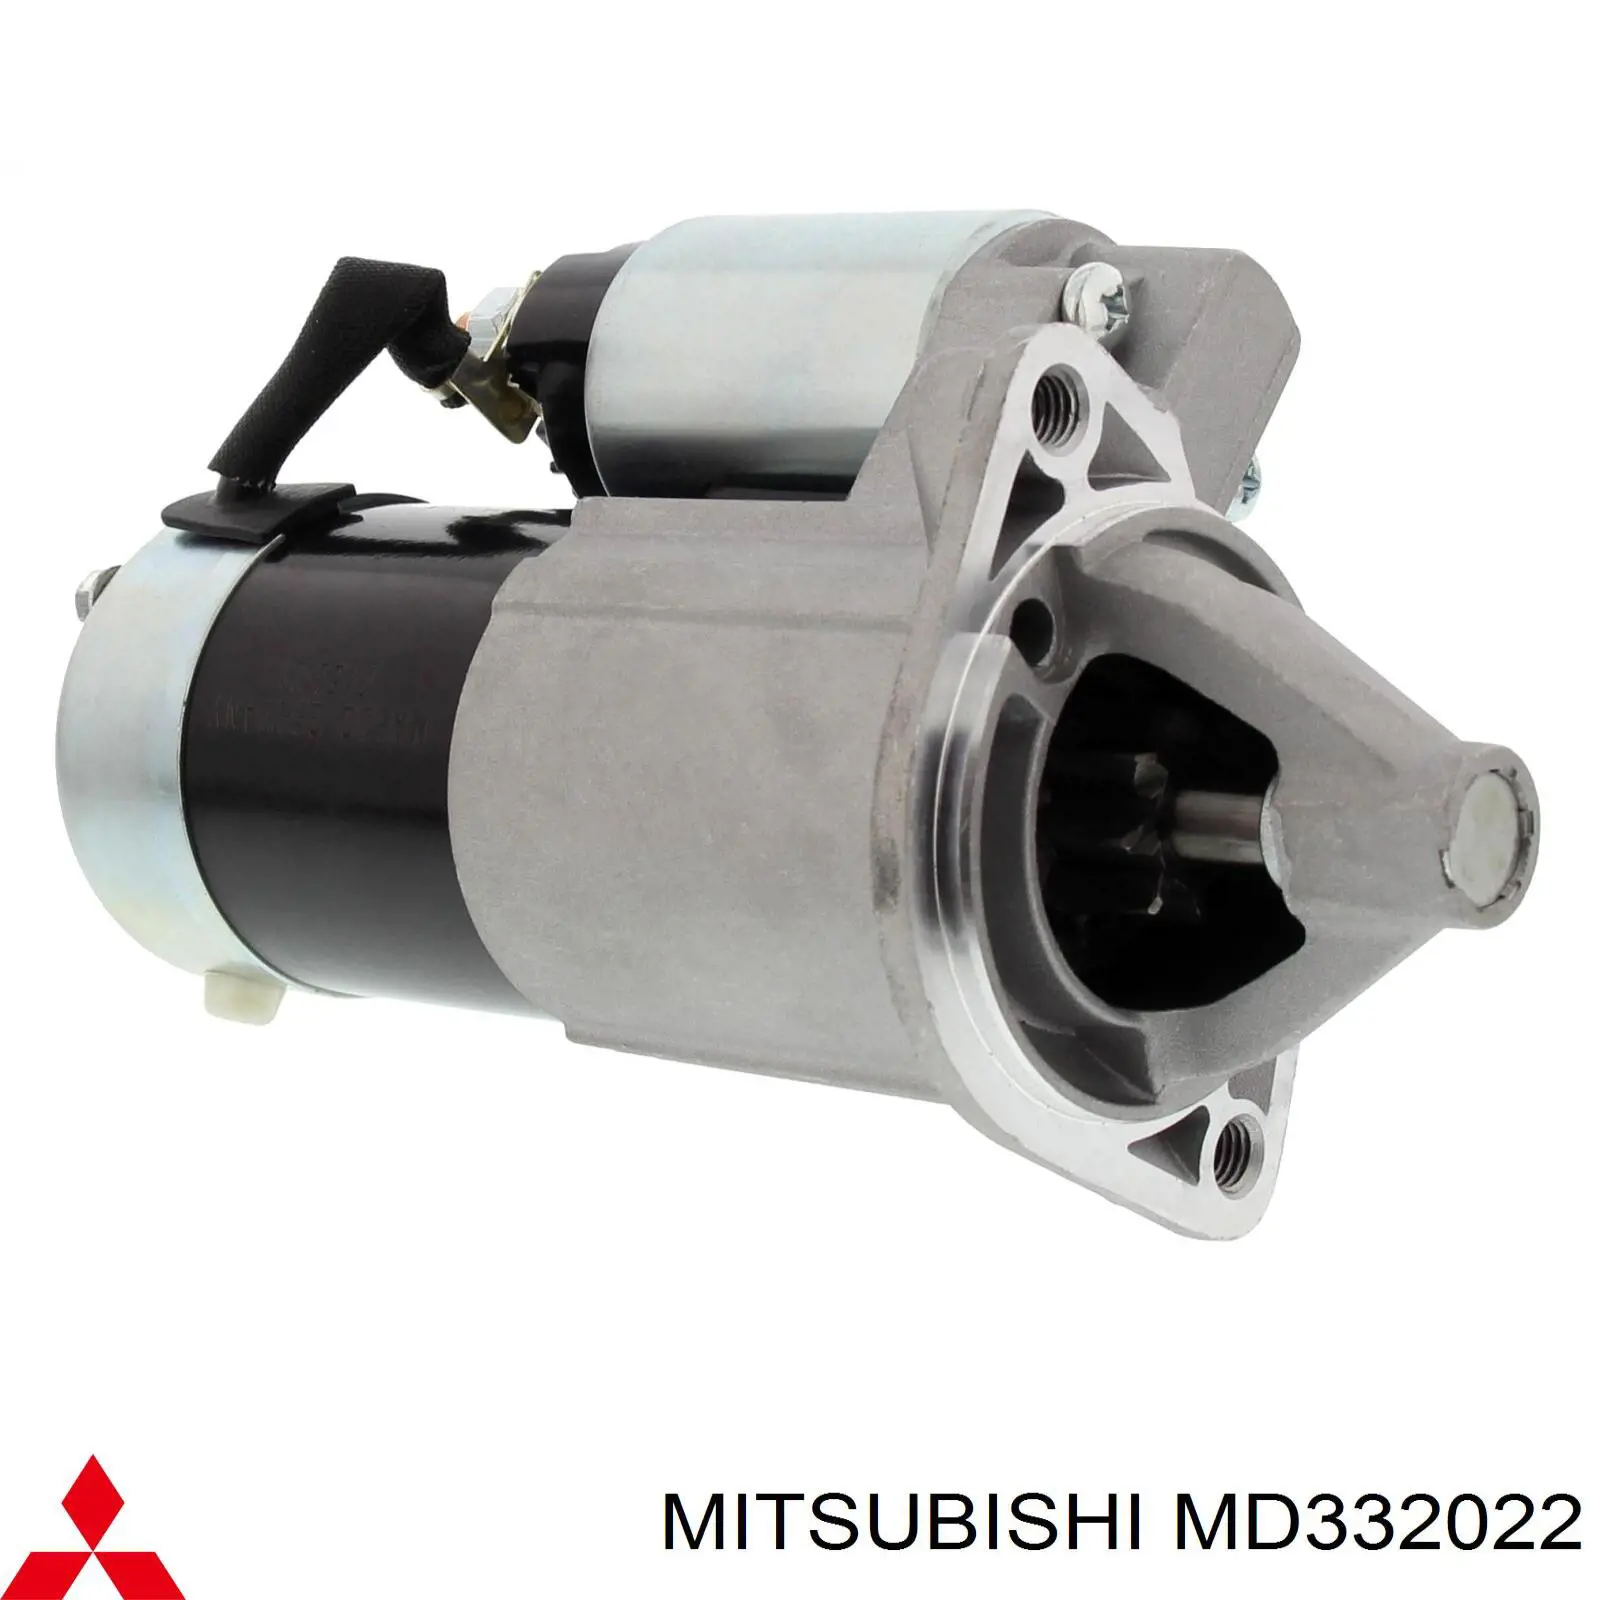 MD332022 Mitsubishi motor de arranque